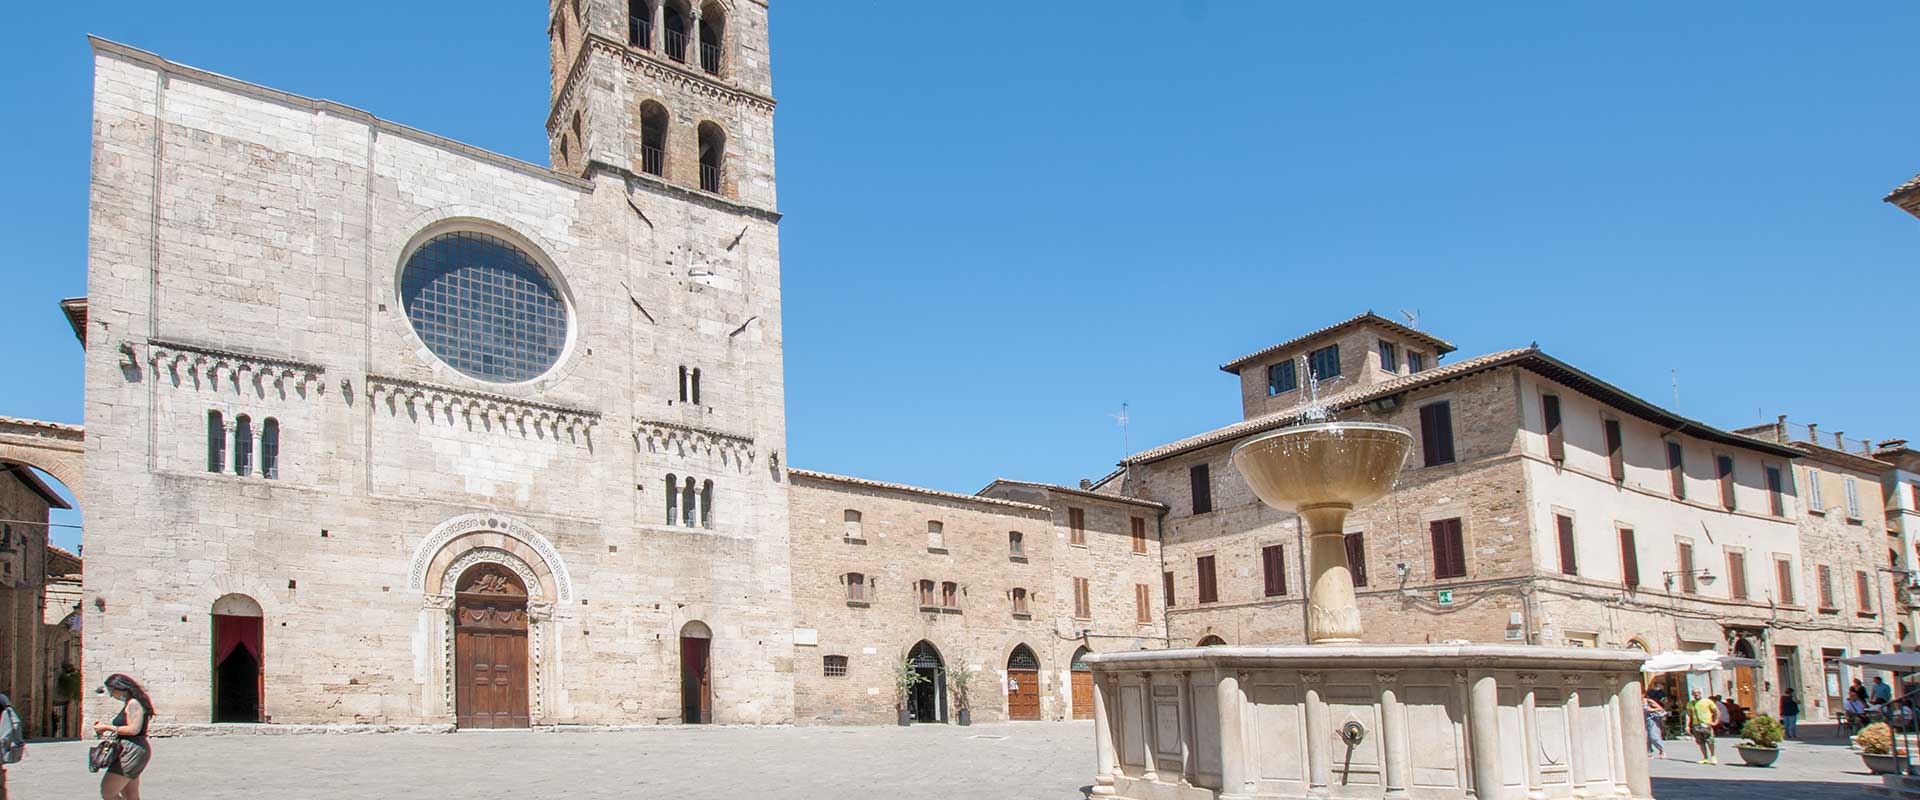 Contatta Appartamenti Le Muse, Casa vacanze nel centro storico di Bevagna, Perugia, Umbria, Italy